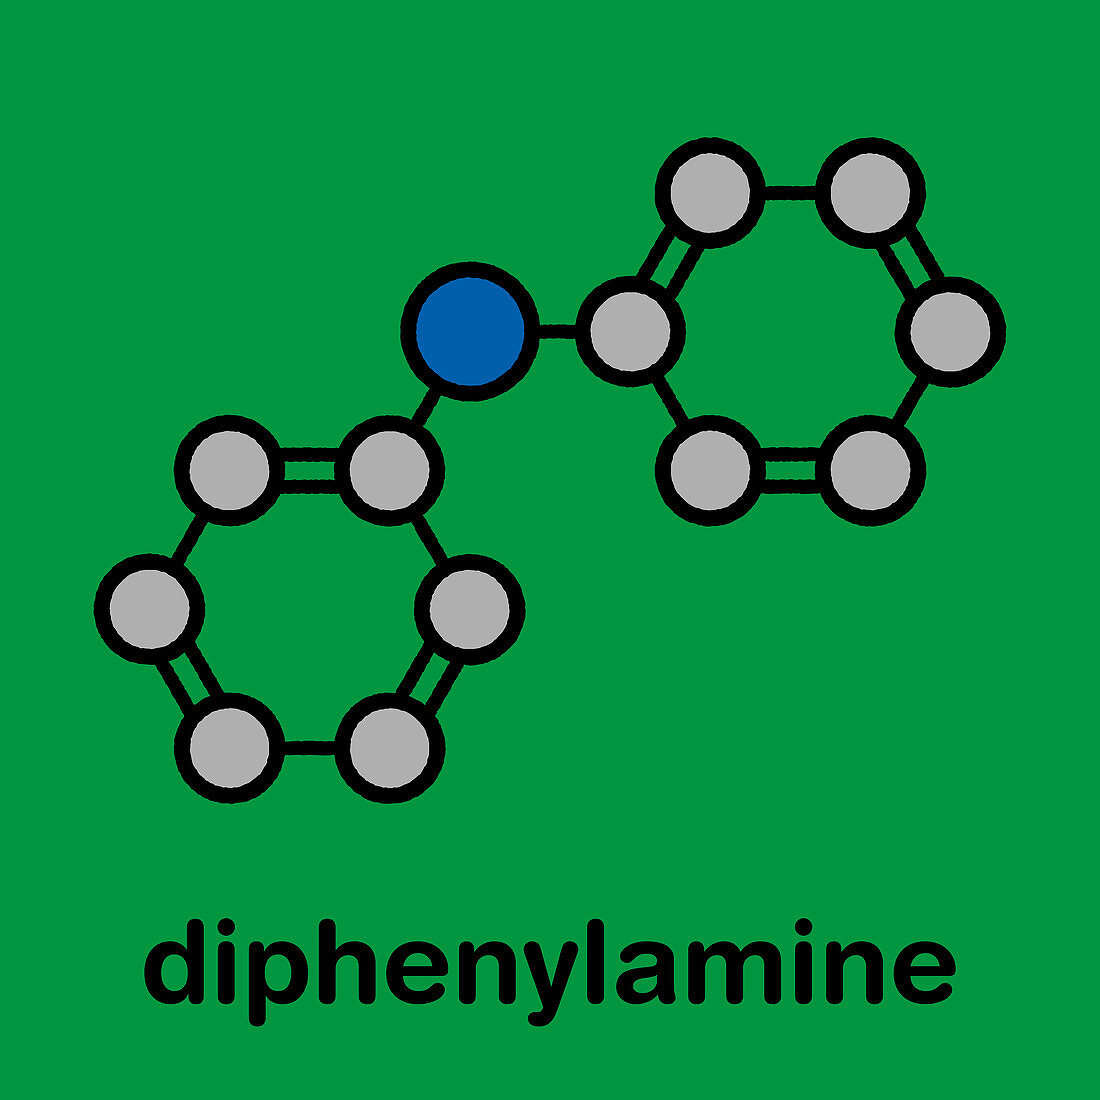 Diphenylamine antioxidant molecule, illustration